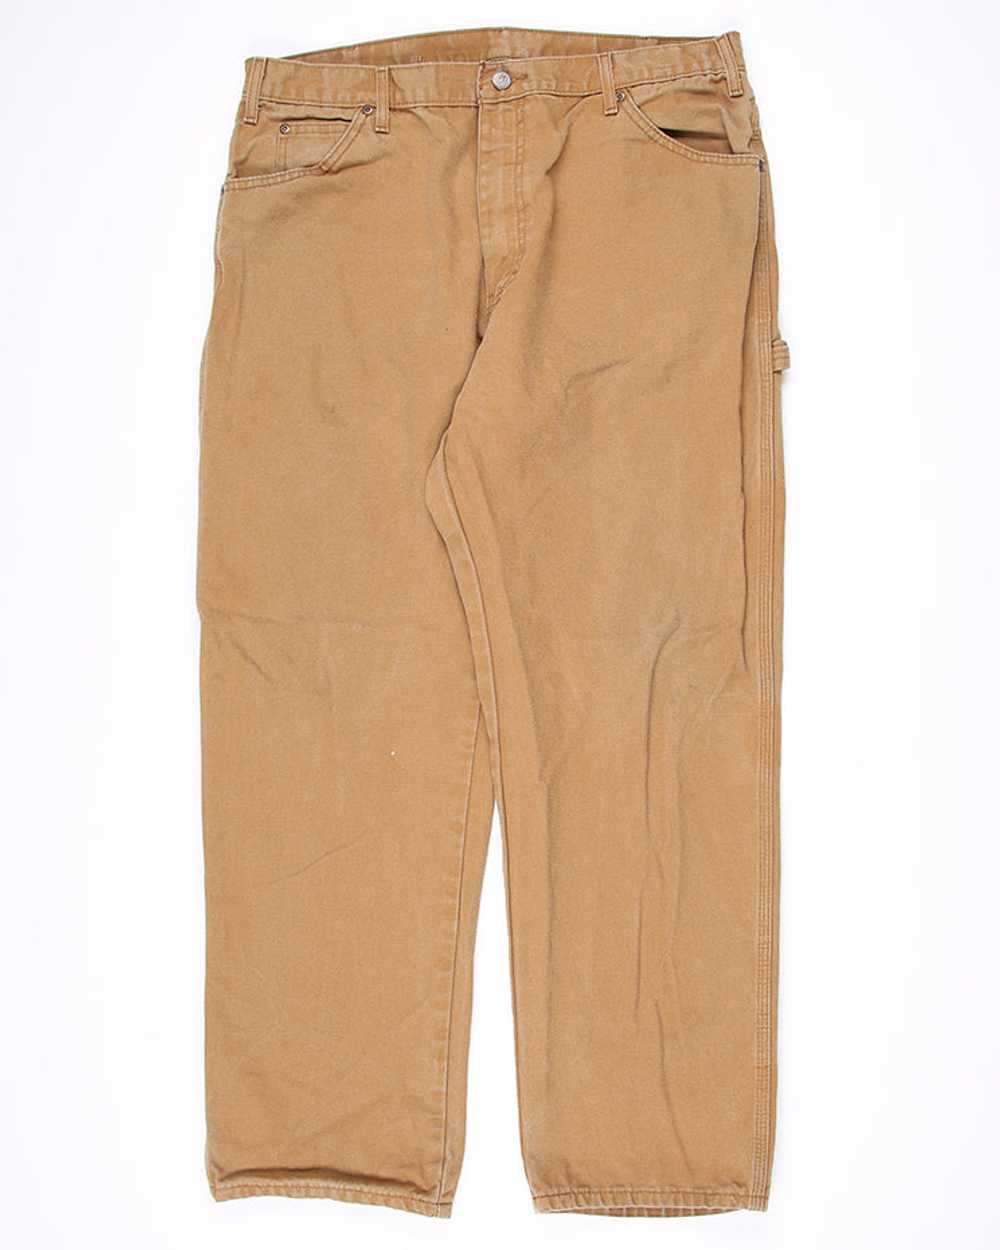 Vintage Dickies workwear jeans - W34 L30 - image 1